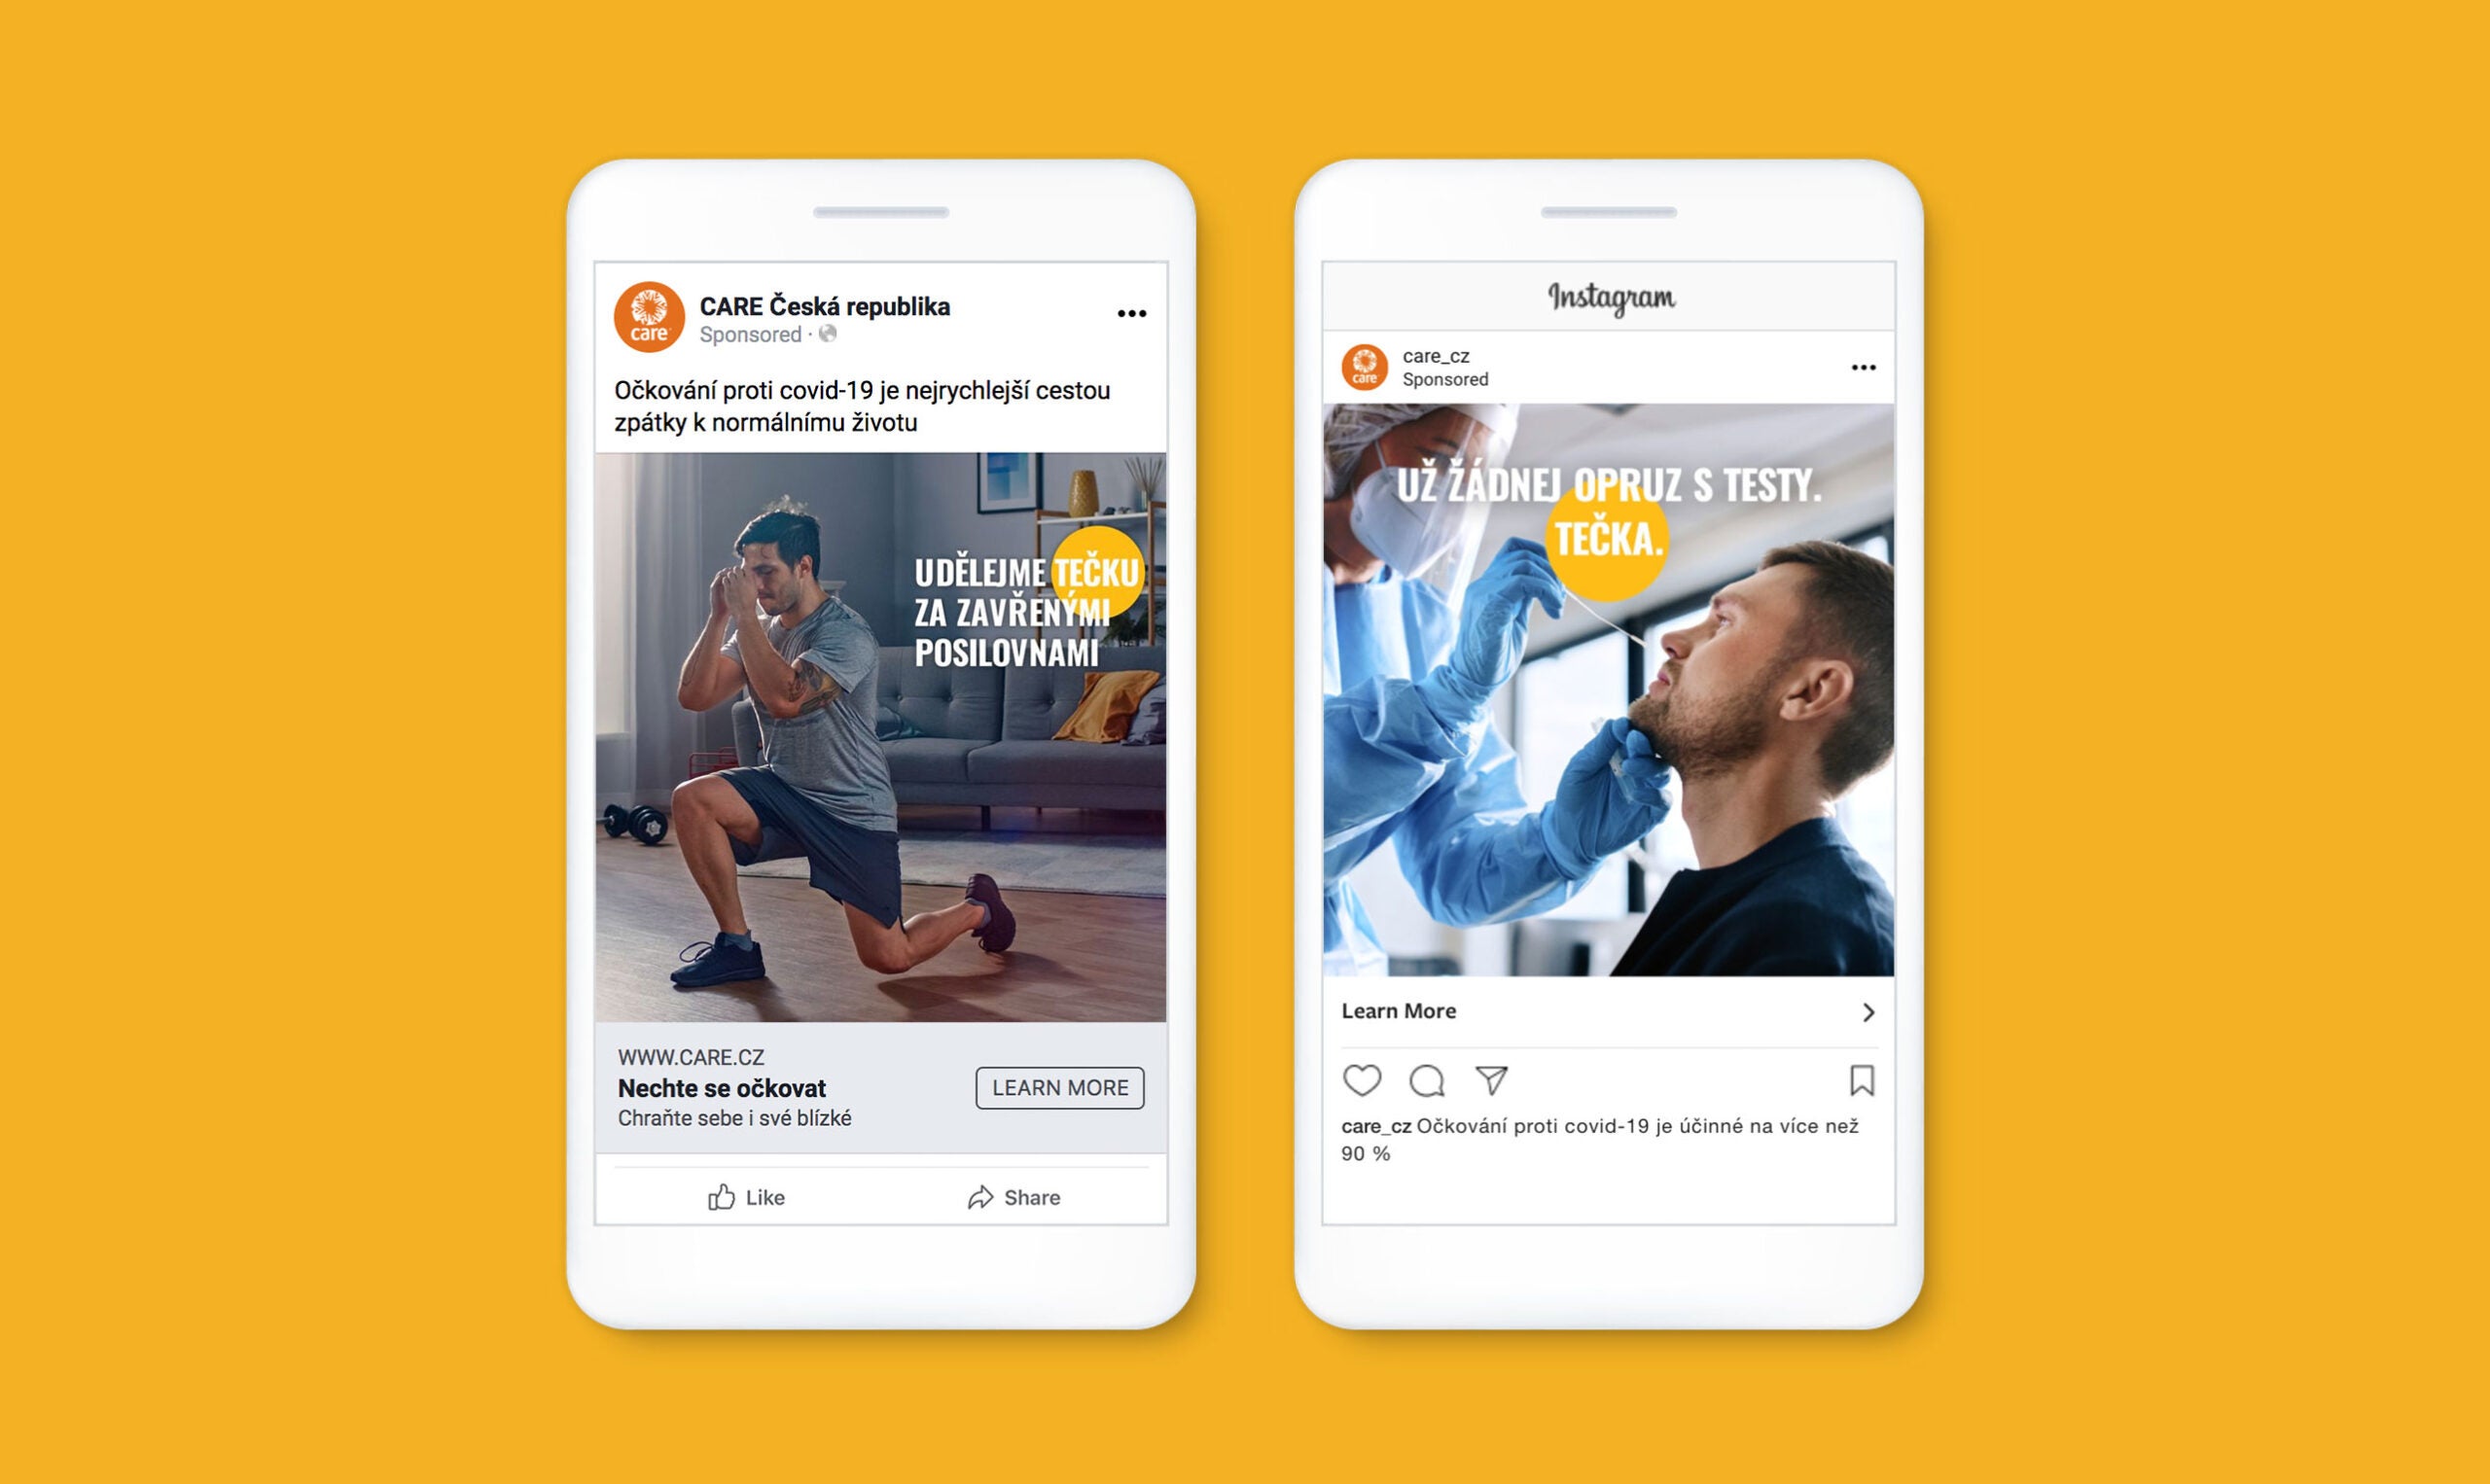 Uma maquete de dois iPhones mostrando postagens no Facebook e no Instagram incentivando as pessoas a tomar a vacina.